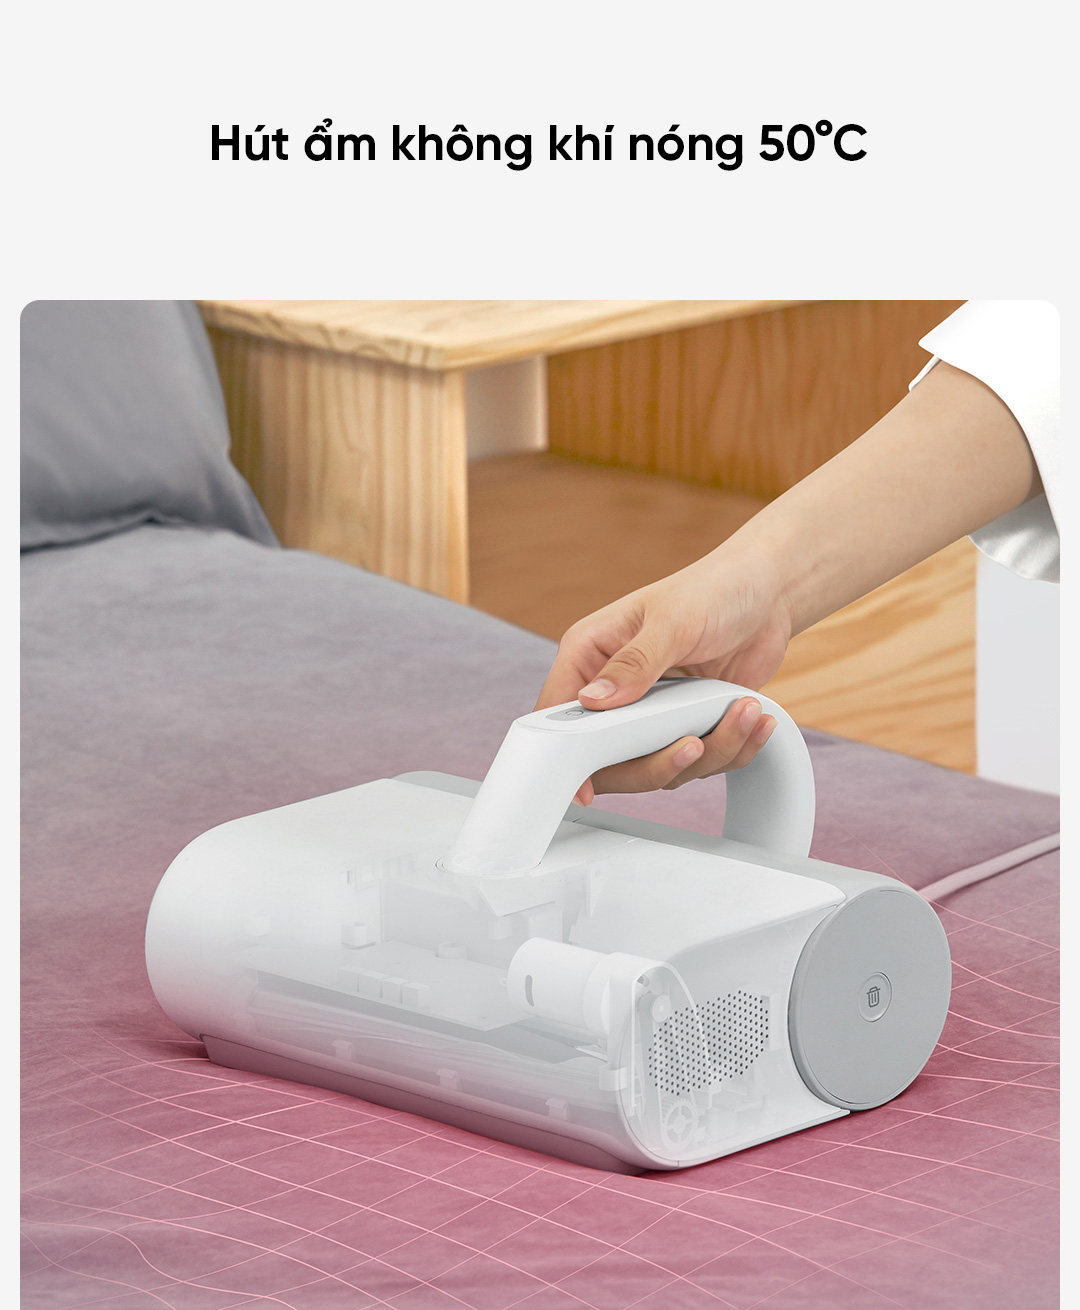 Máy hút bụi Mijia được tích hợp ống dẫn khí truyền nóng 50 độ C, có khả năng hút ẩm giúp giường đệm luôn khô ráo